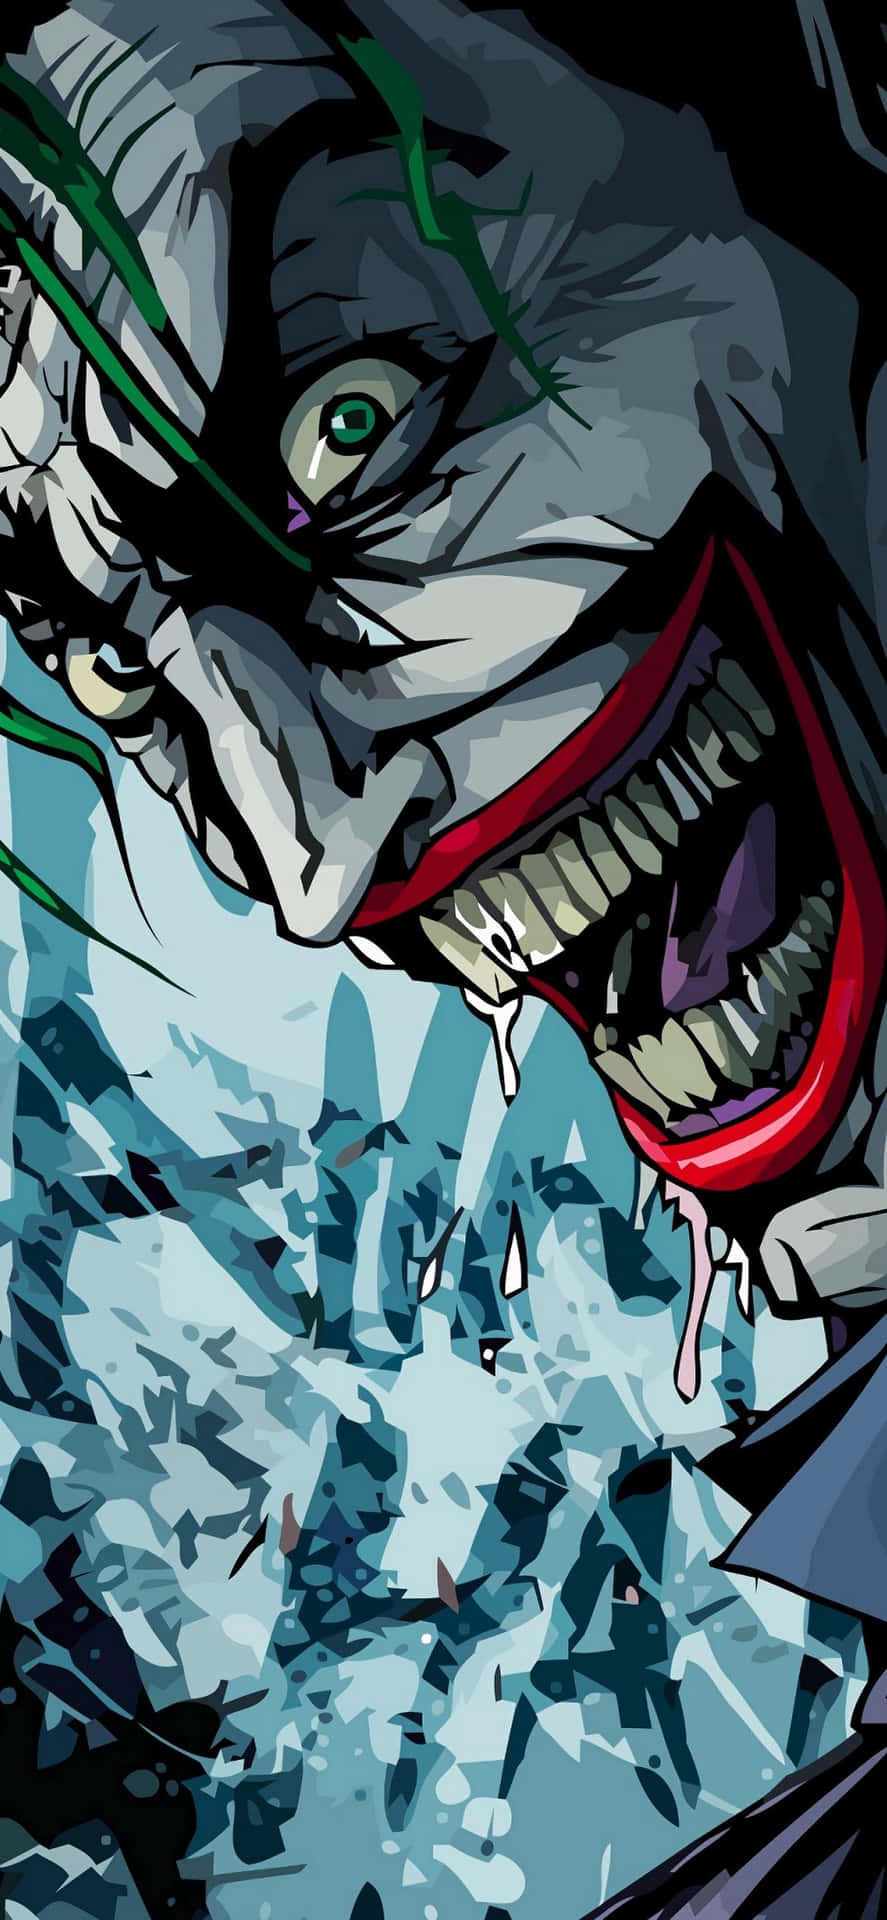 Joker Laughing Maniacally